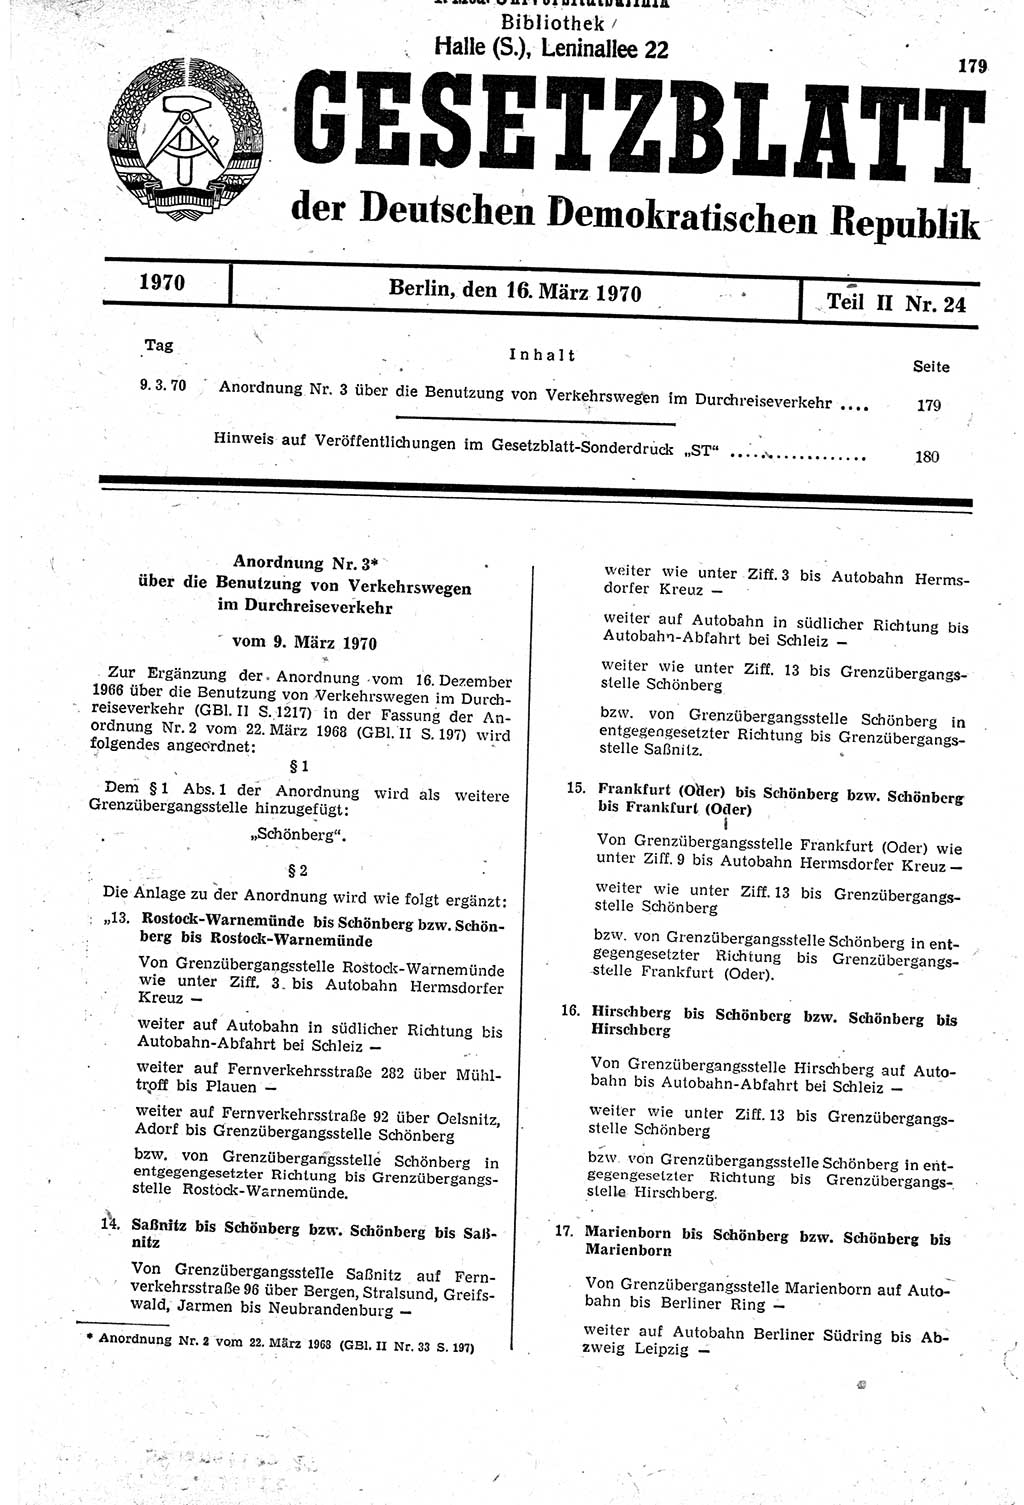 Gesetzblatt (GBl.) der Deutschen Demokratischen Republik (DDR) Teil ⅠⅠ 1970, Seite 179 (GBl. DDR ⅠⅠ 1970, S. 179)